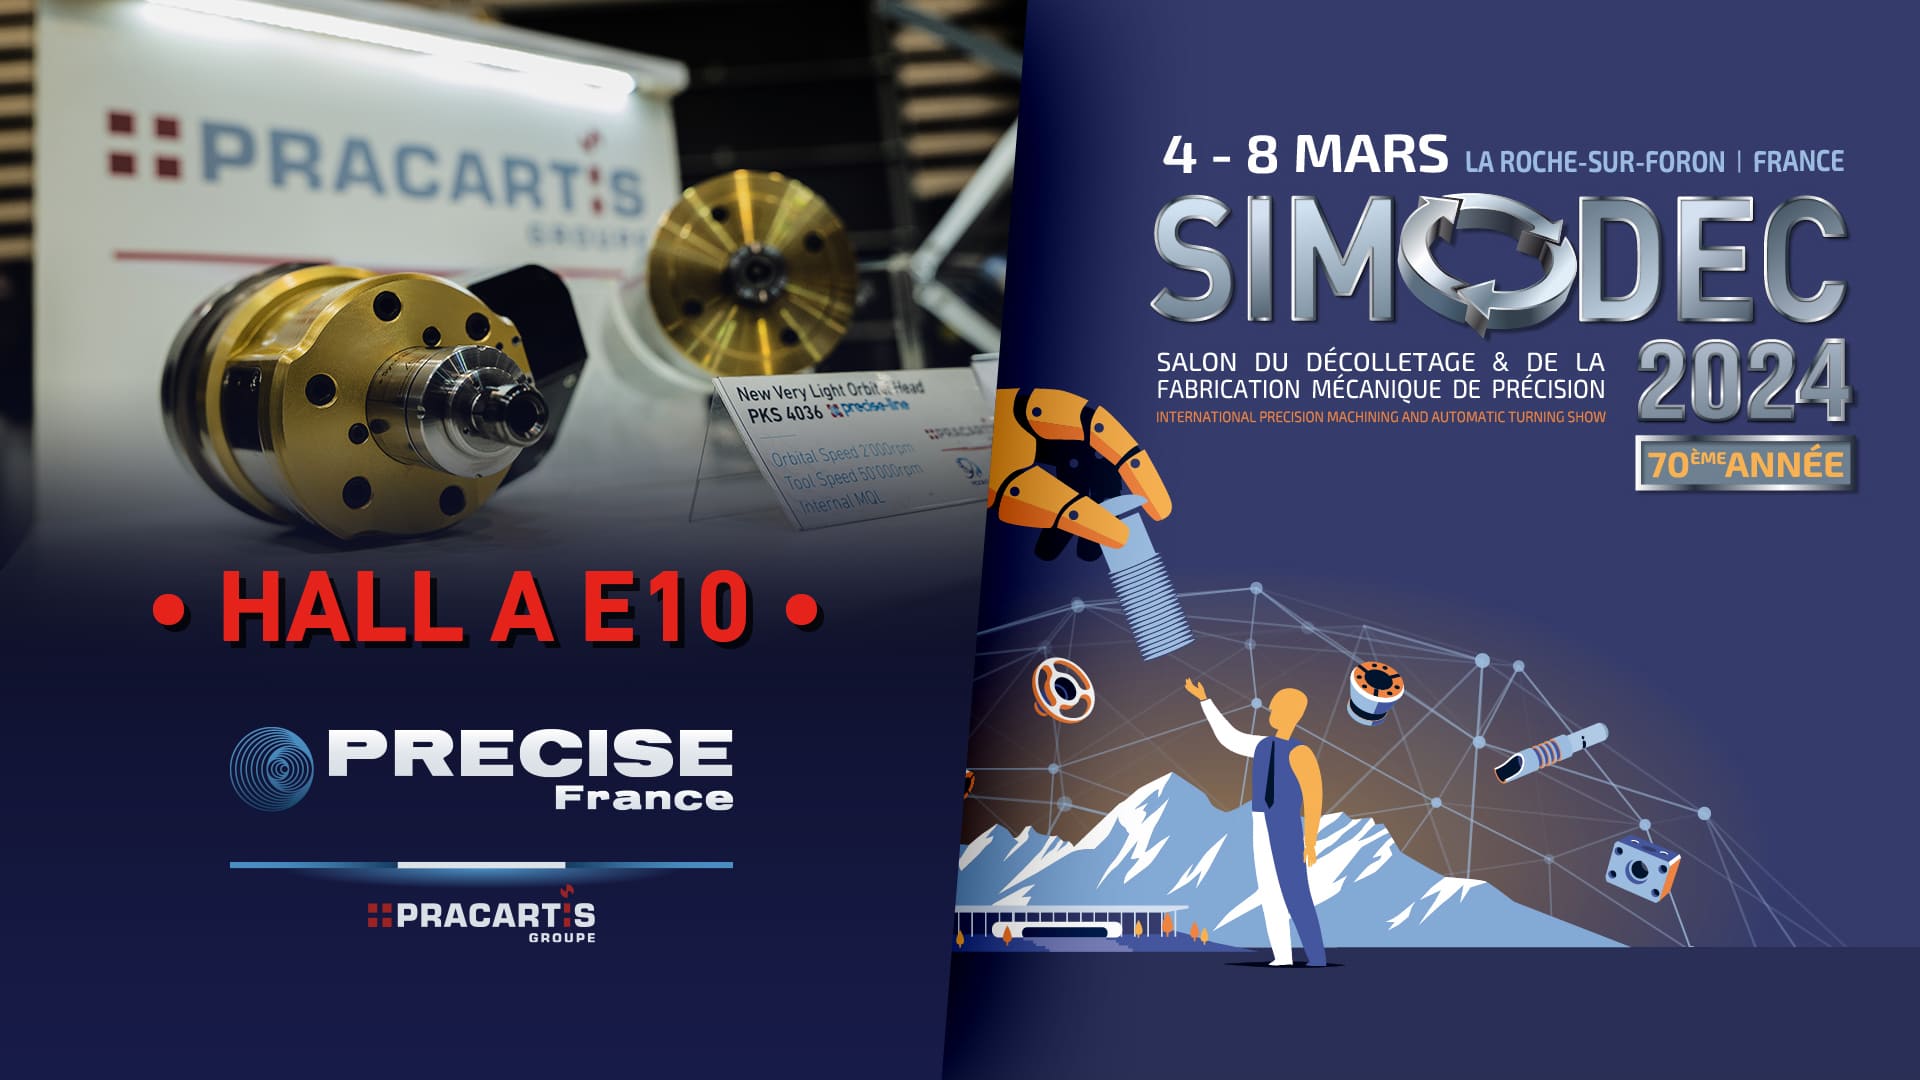 PRECISE FRANCE - SIMODEC 2024 - HALL A E10